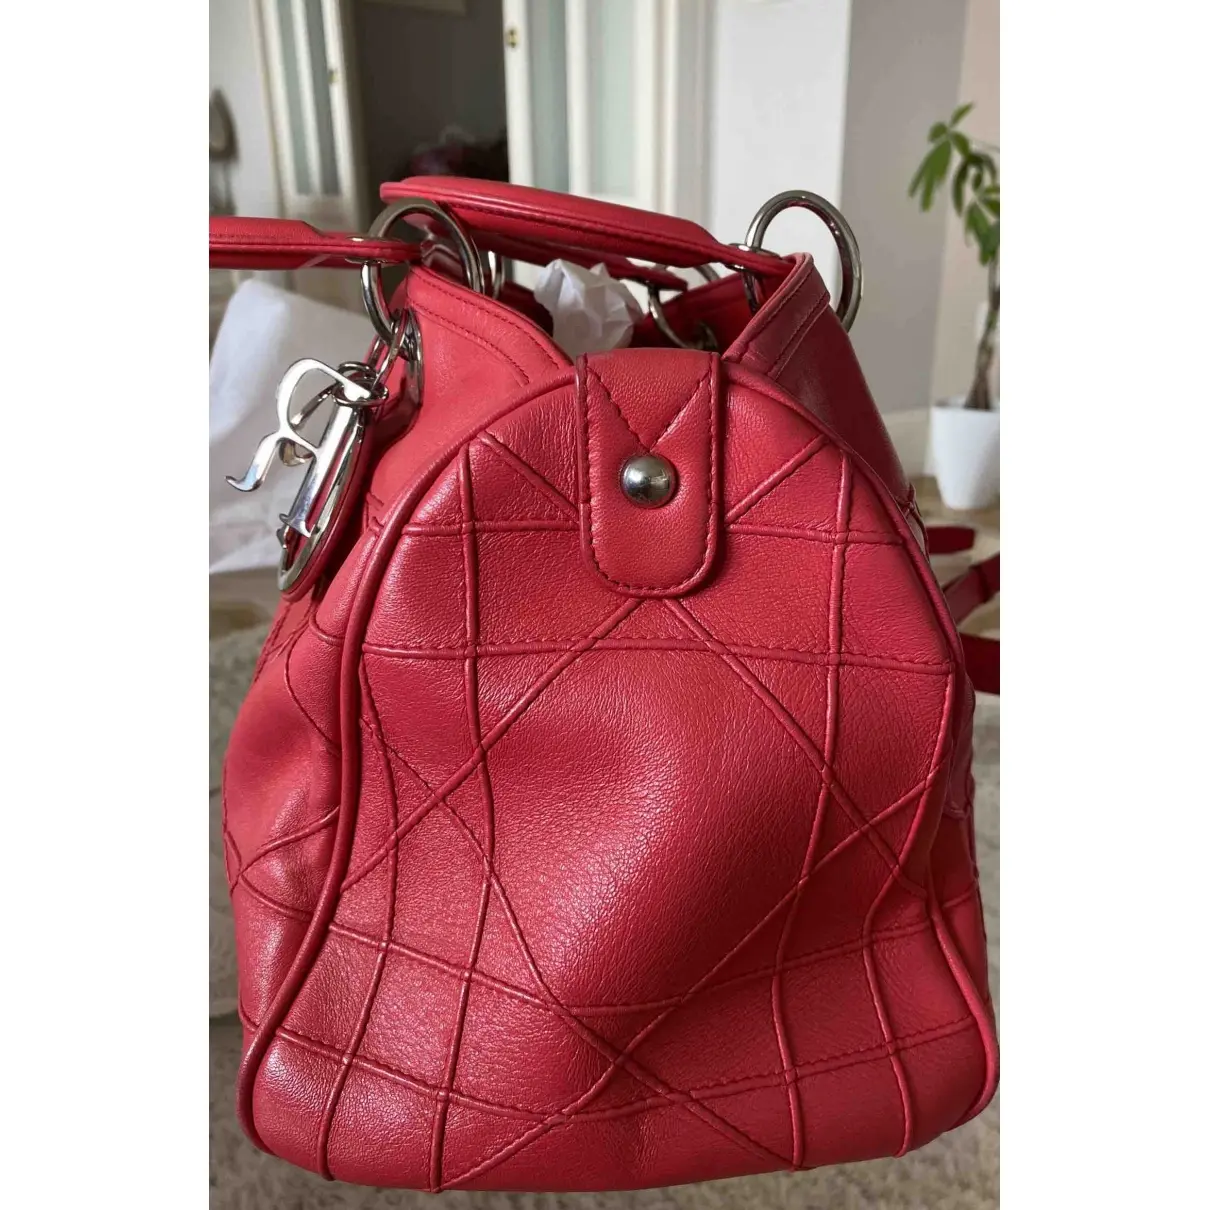 Dior Granville leather handbag for sale